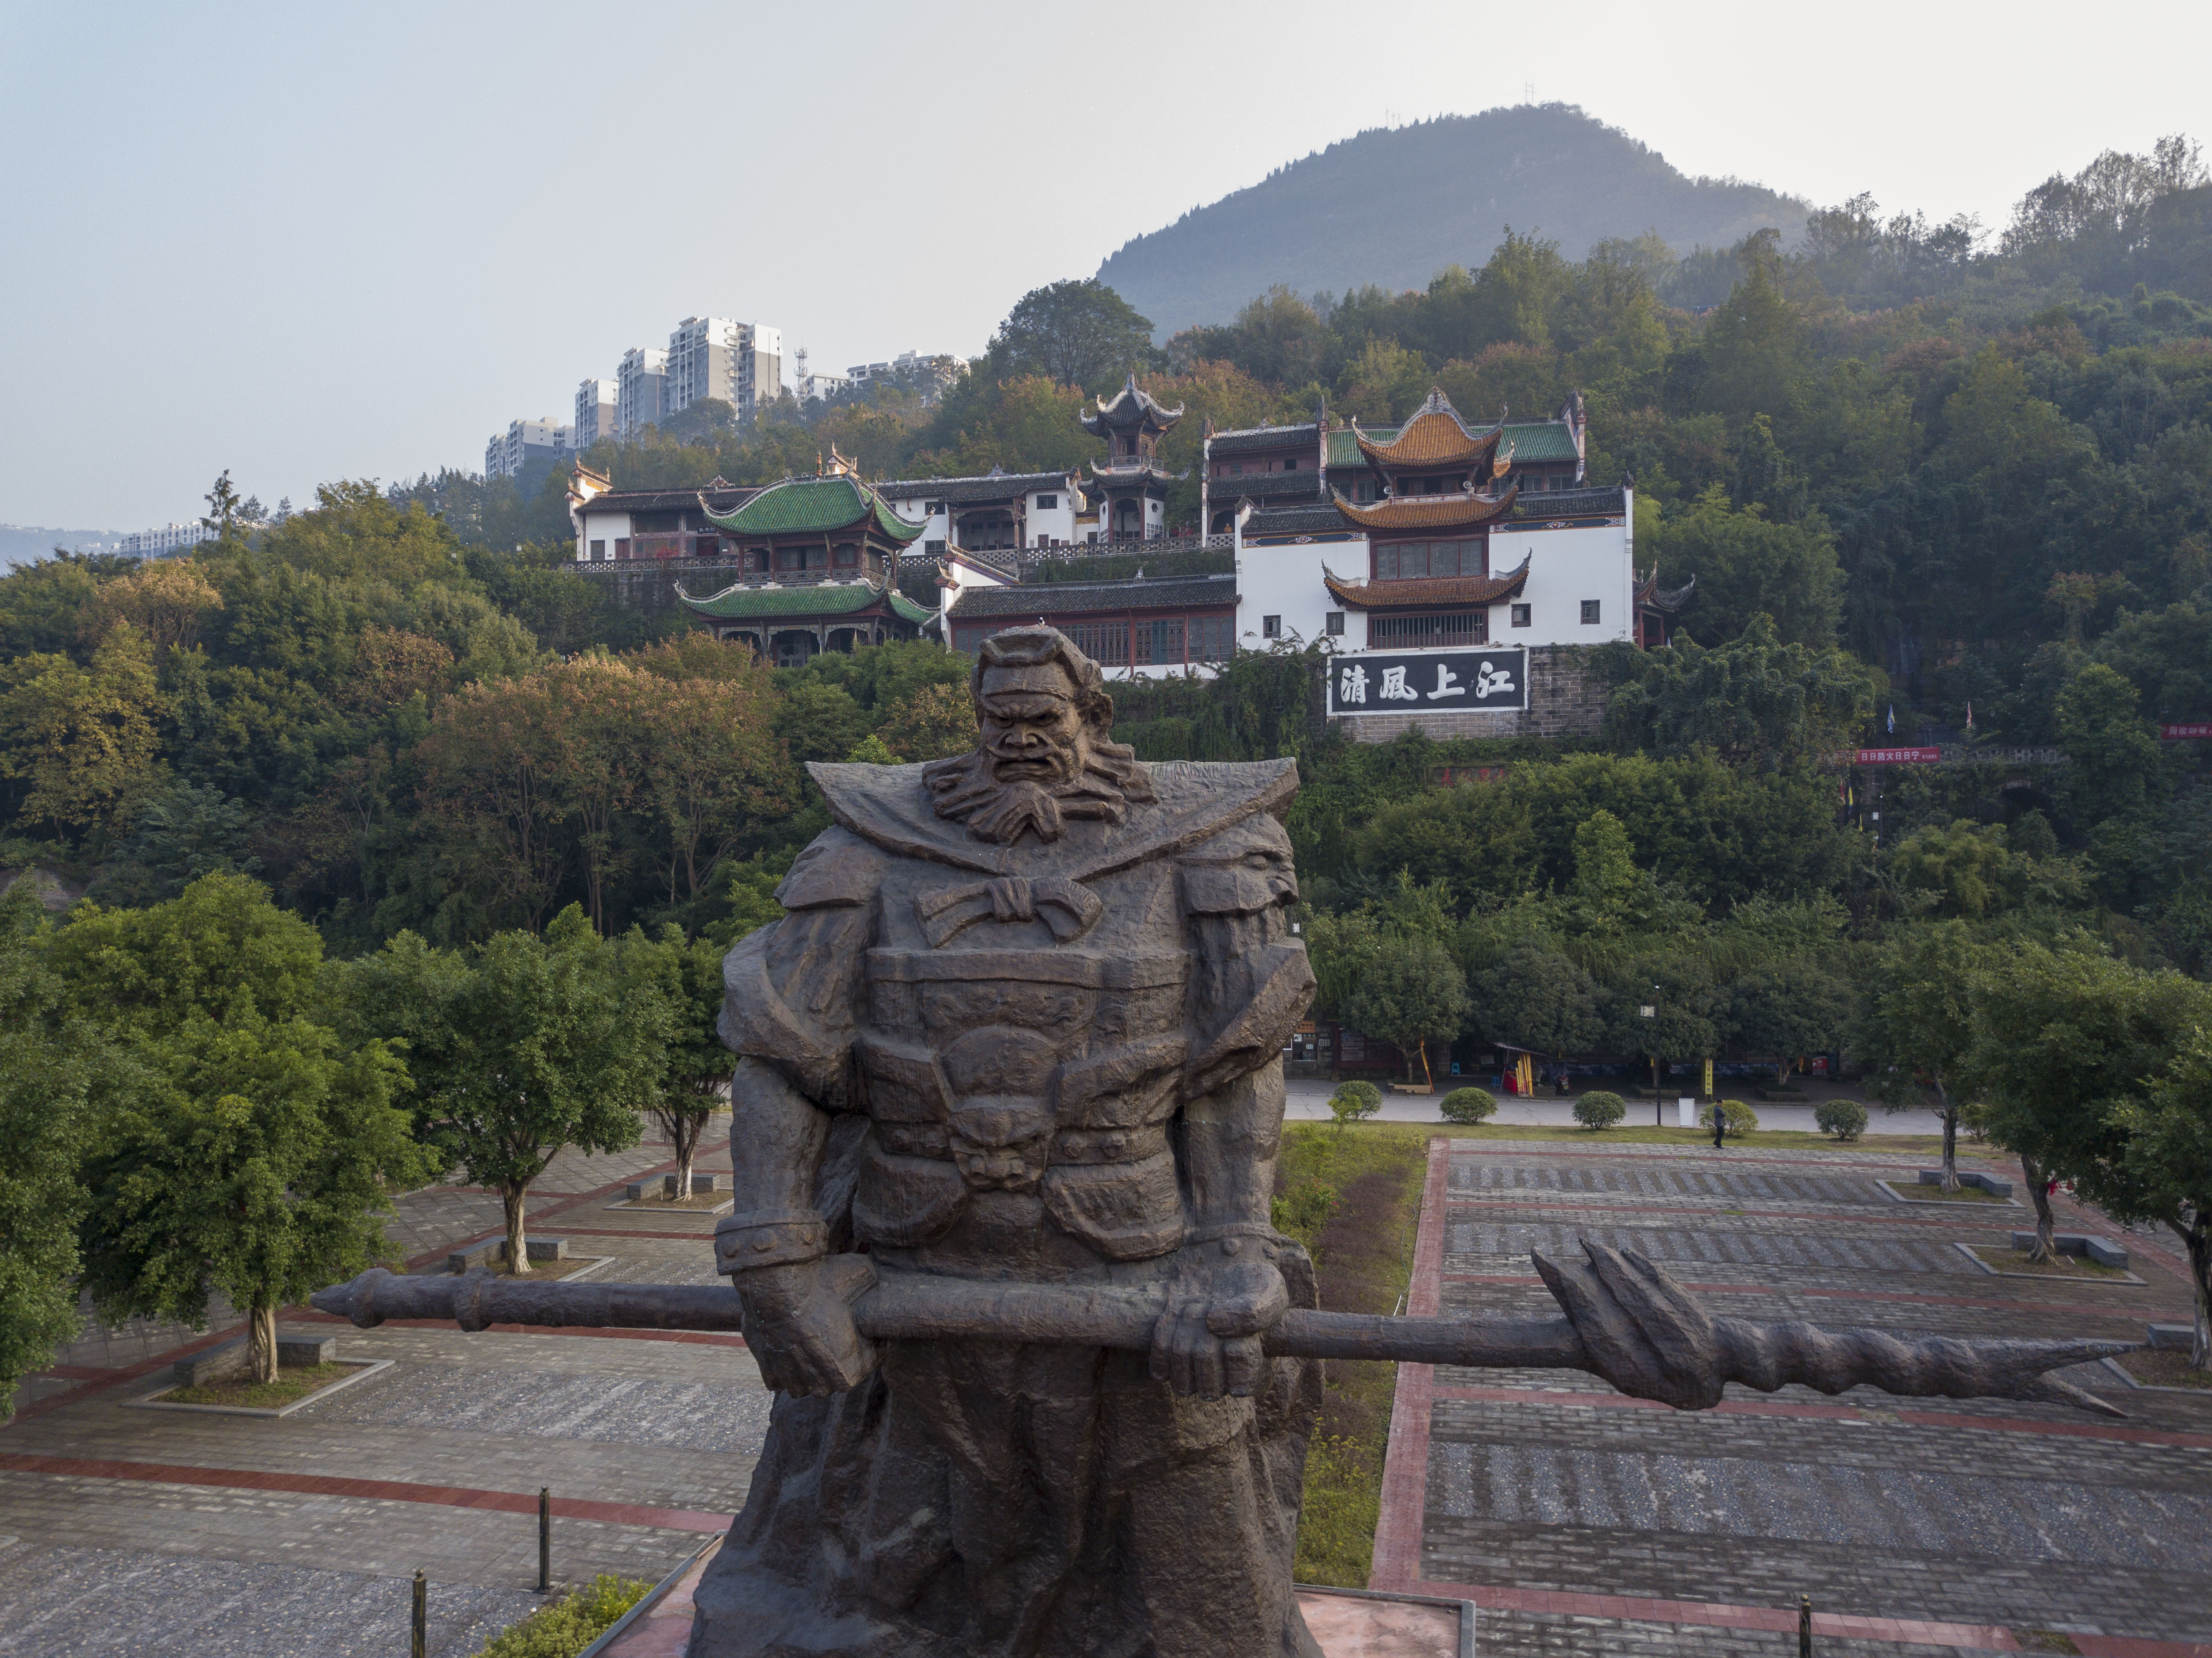 三国志」の英雄、張飛の首が埋葬された張飛廟を訪ねて 重慶 写真19枚